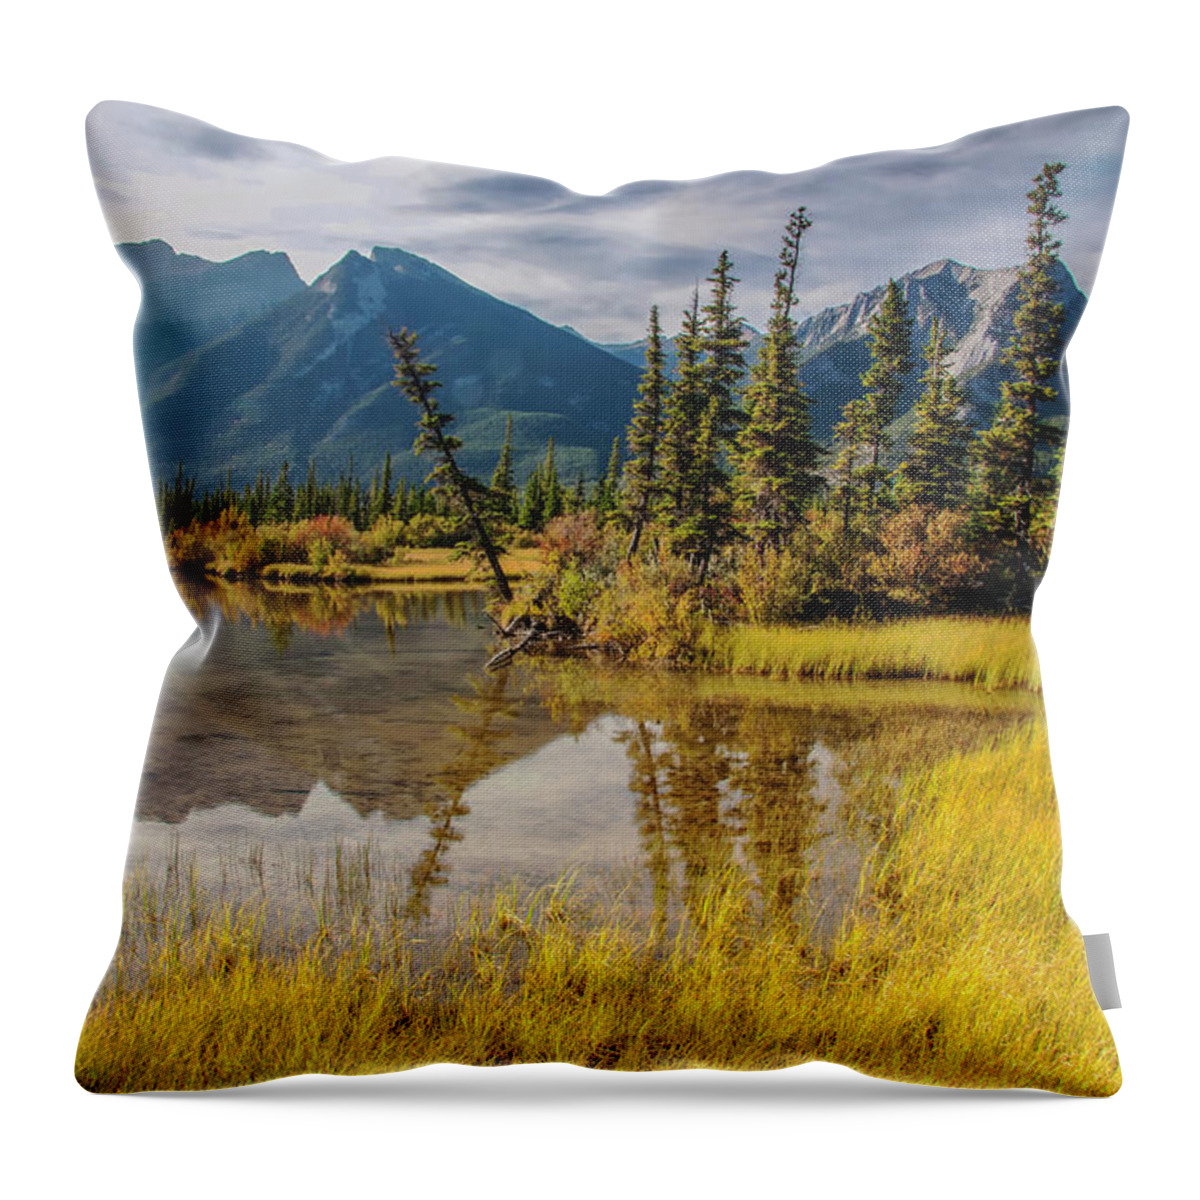 Jasper National Park Throw Pillow featuring the photograph Jasper Wetlands 2009 02 by Jim Dollar